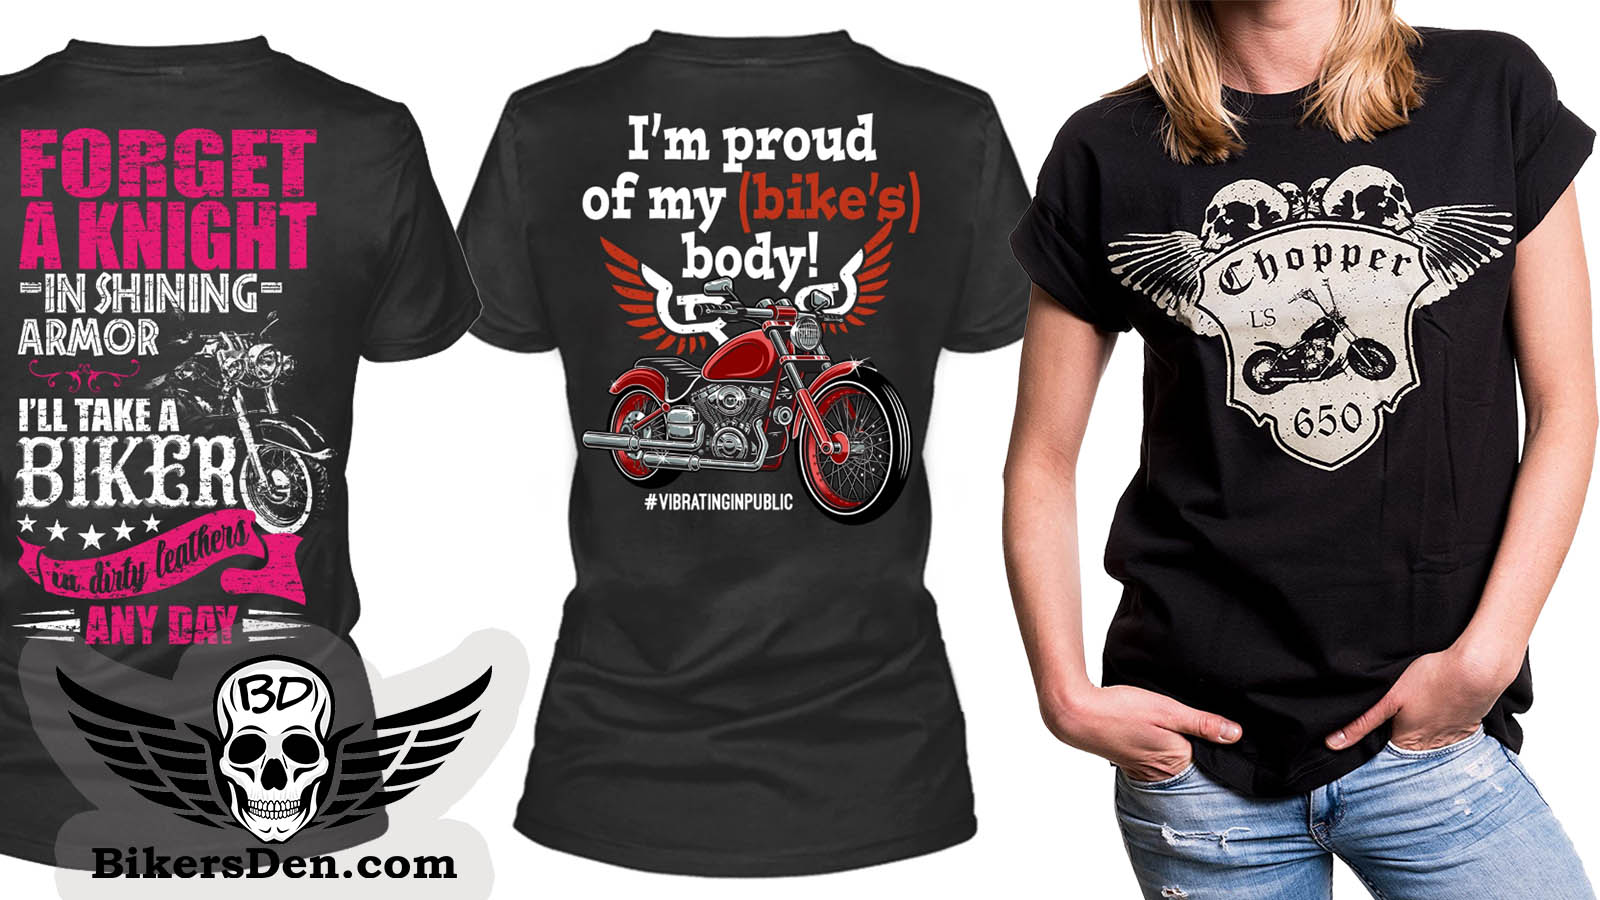 Revisor Tilhører blad Women's Motorcycle & Biker T-Shirts - The Bikers' Den